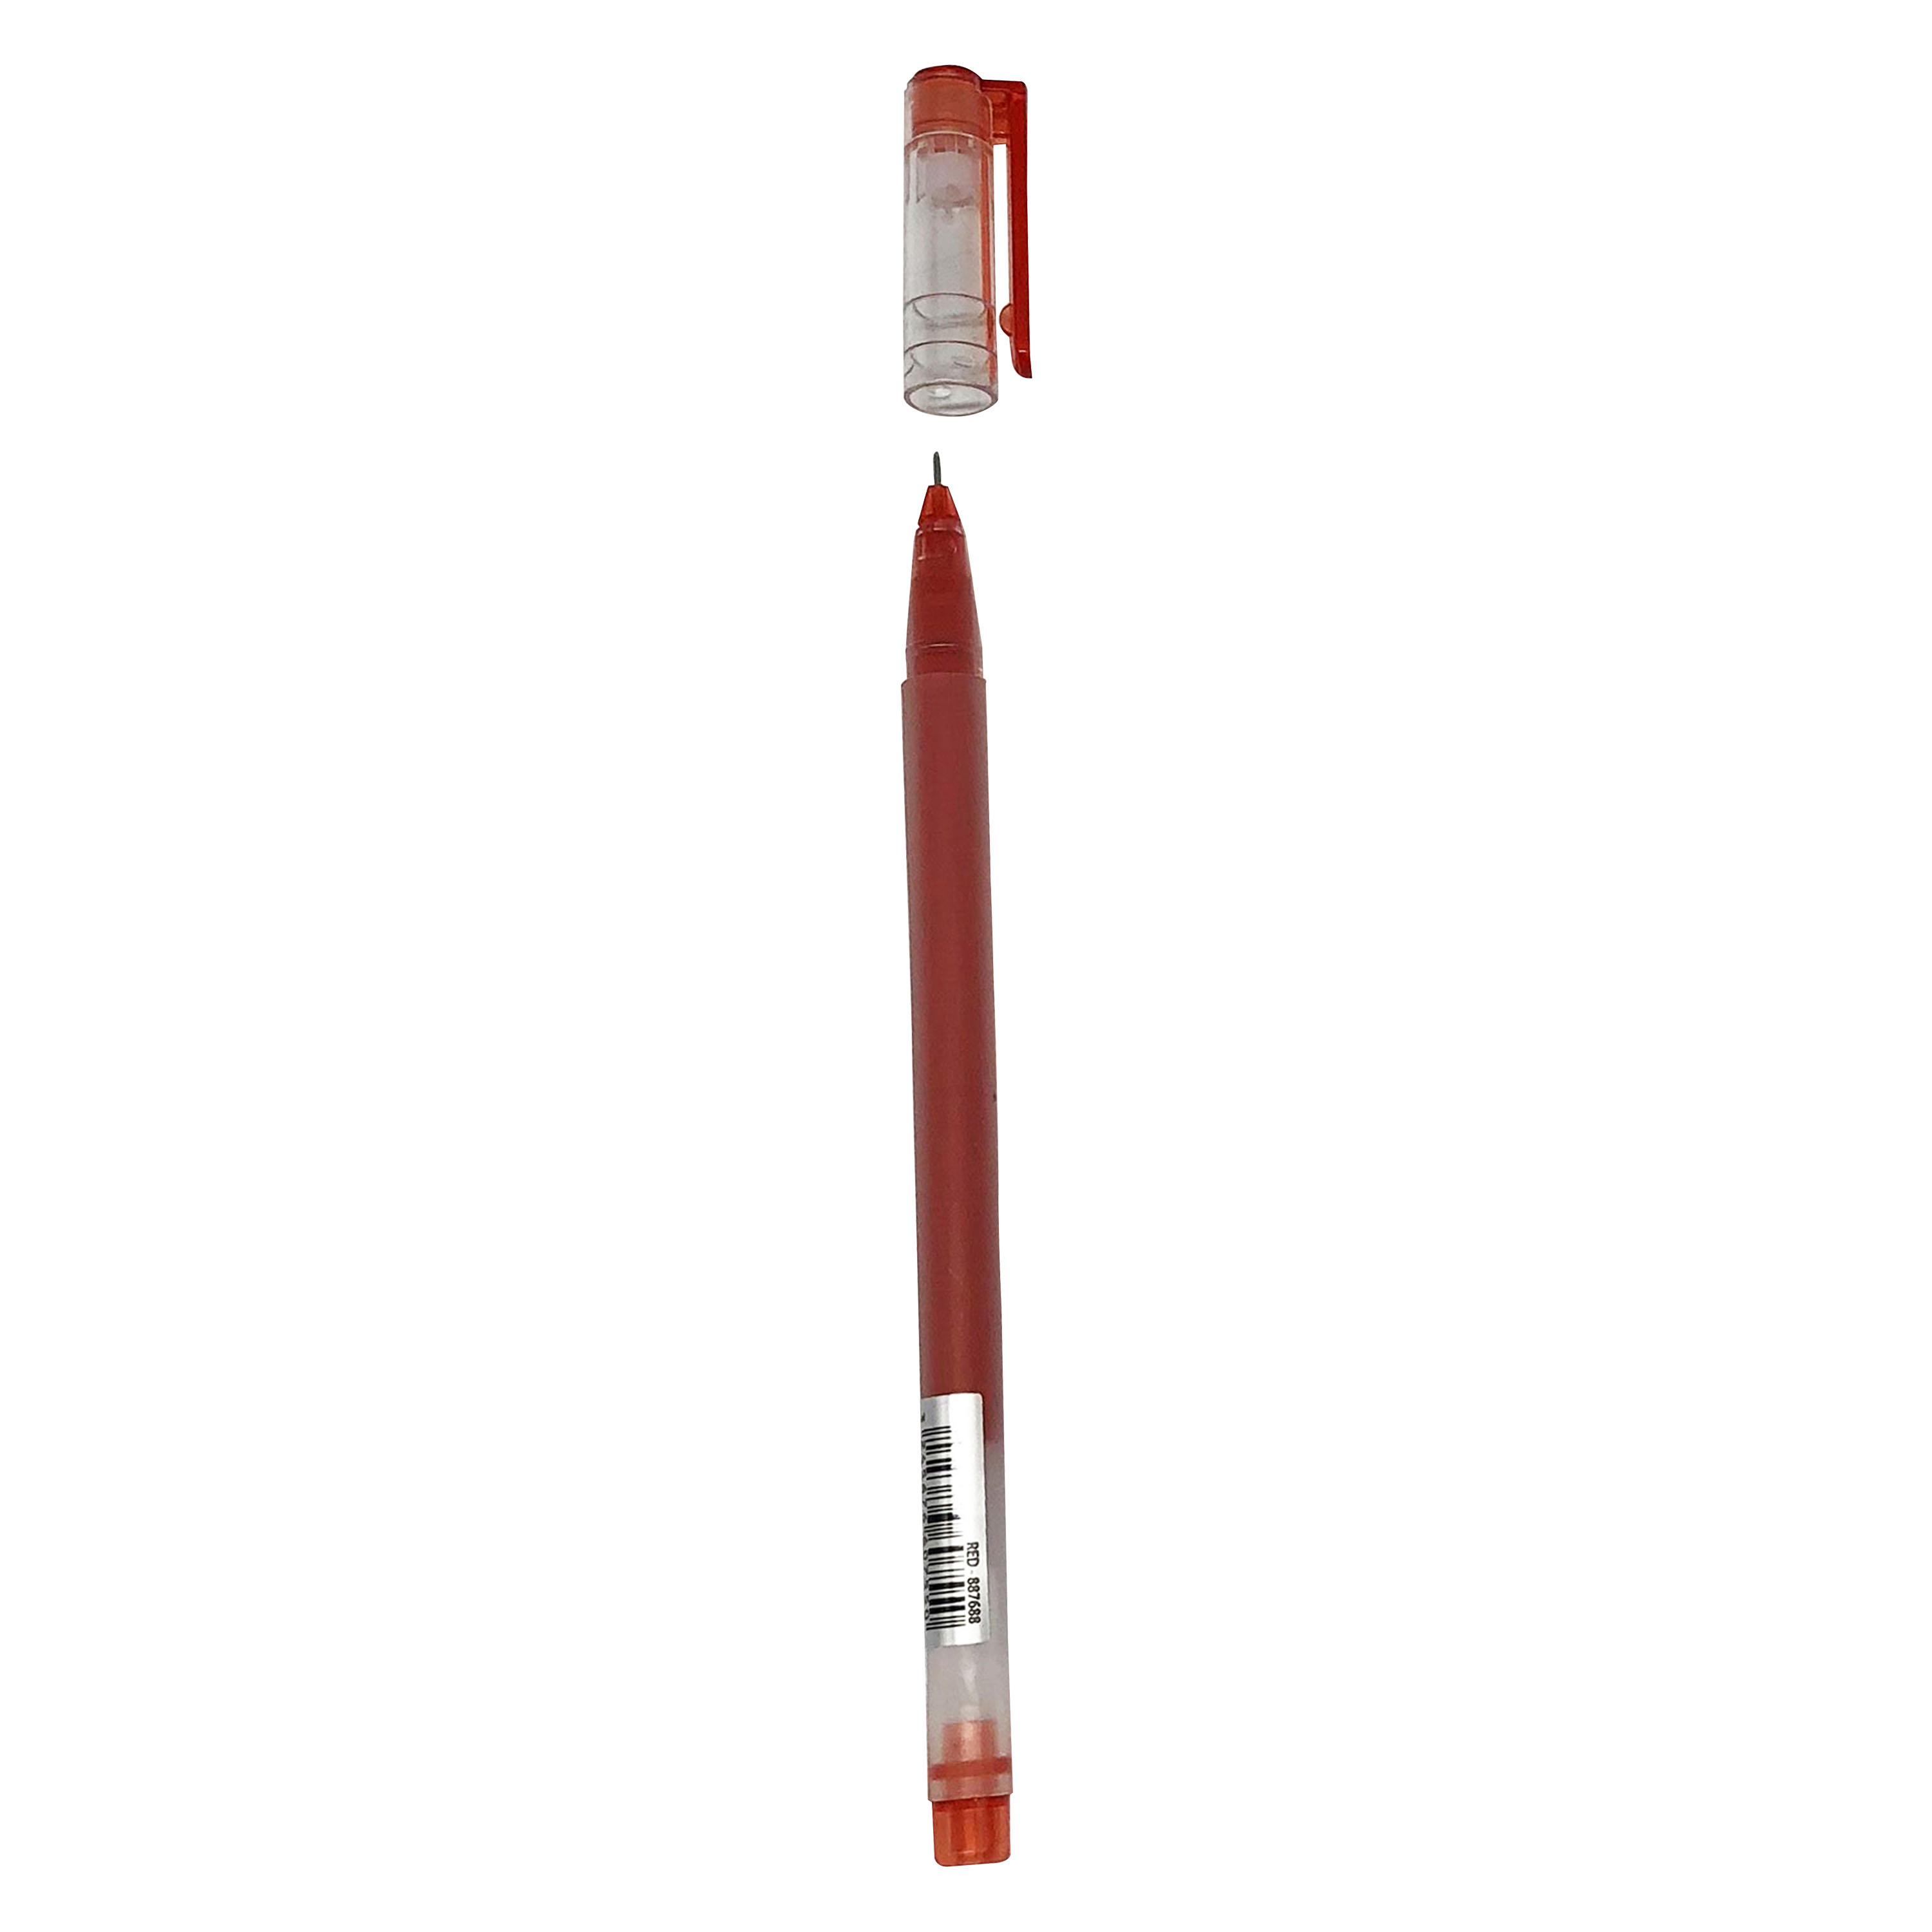 Ручка гелевая Каждый день 887688, красная, 0,5 мм, 1 шт.